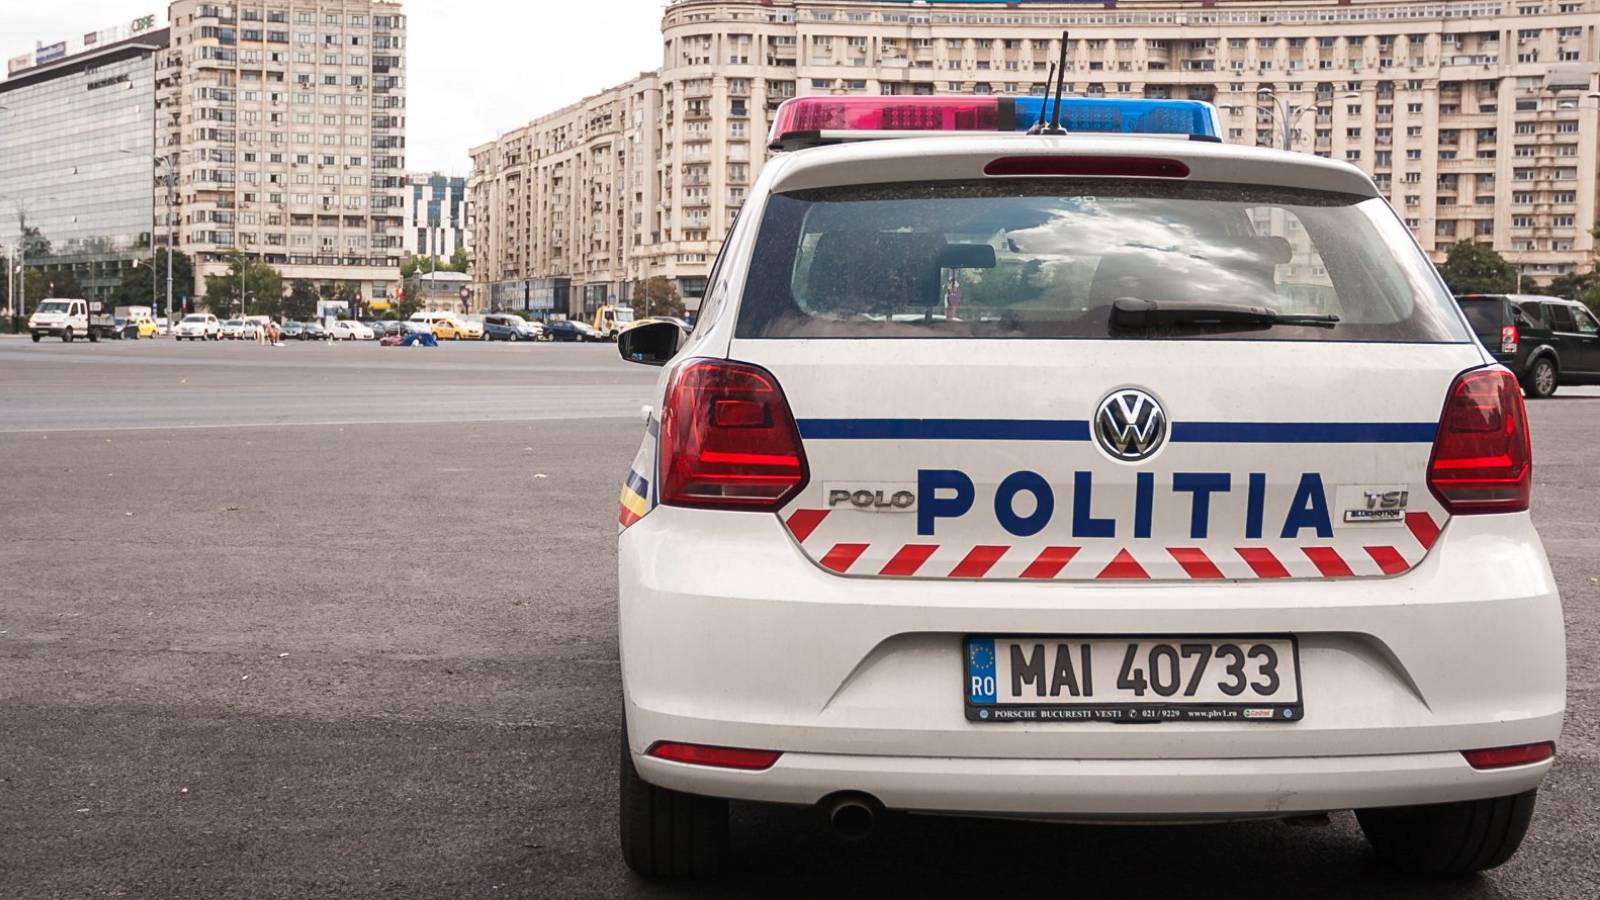 Rumænsk politi ordreplacering